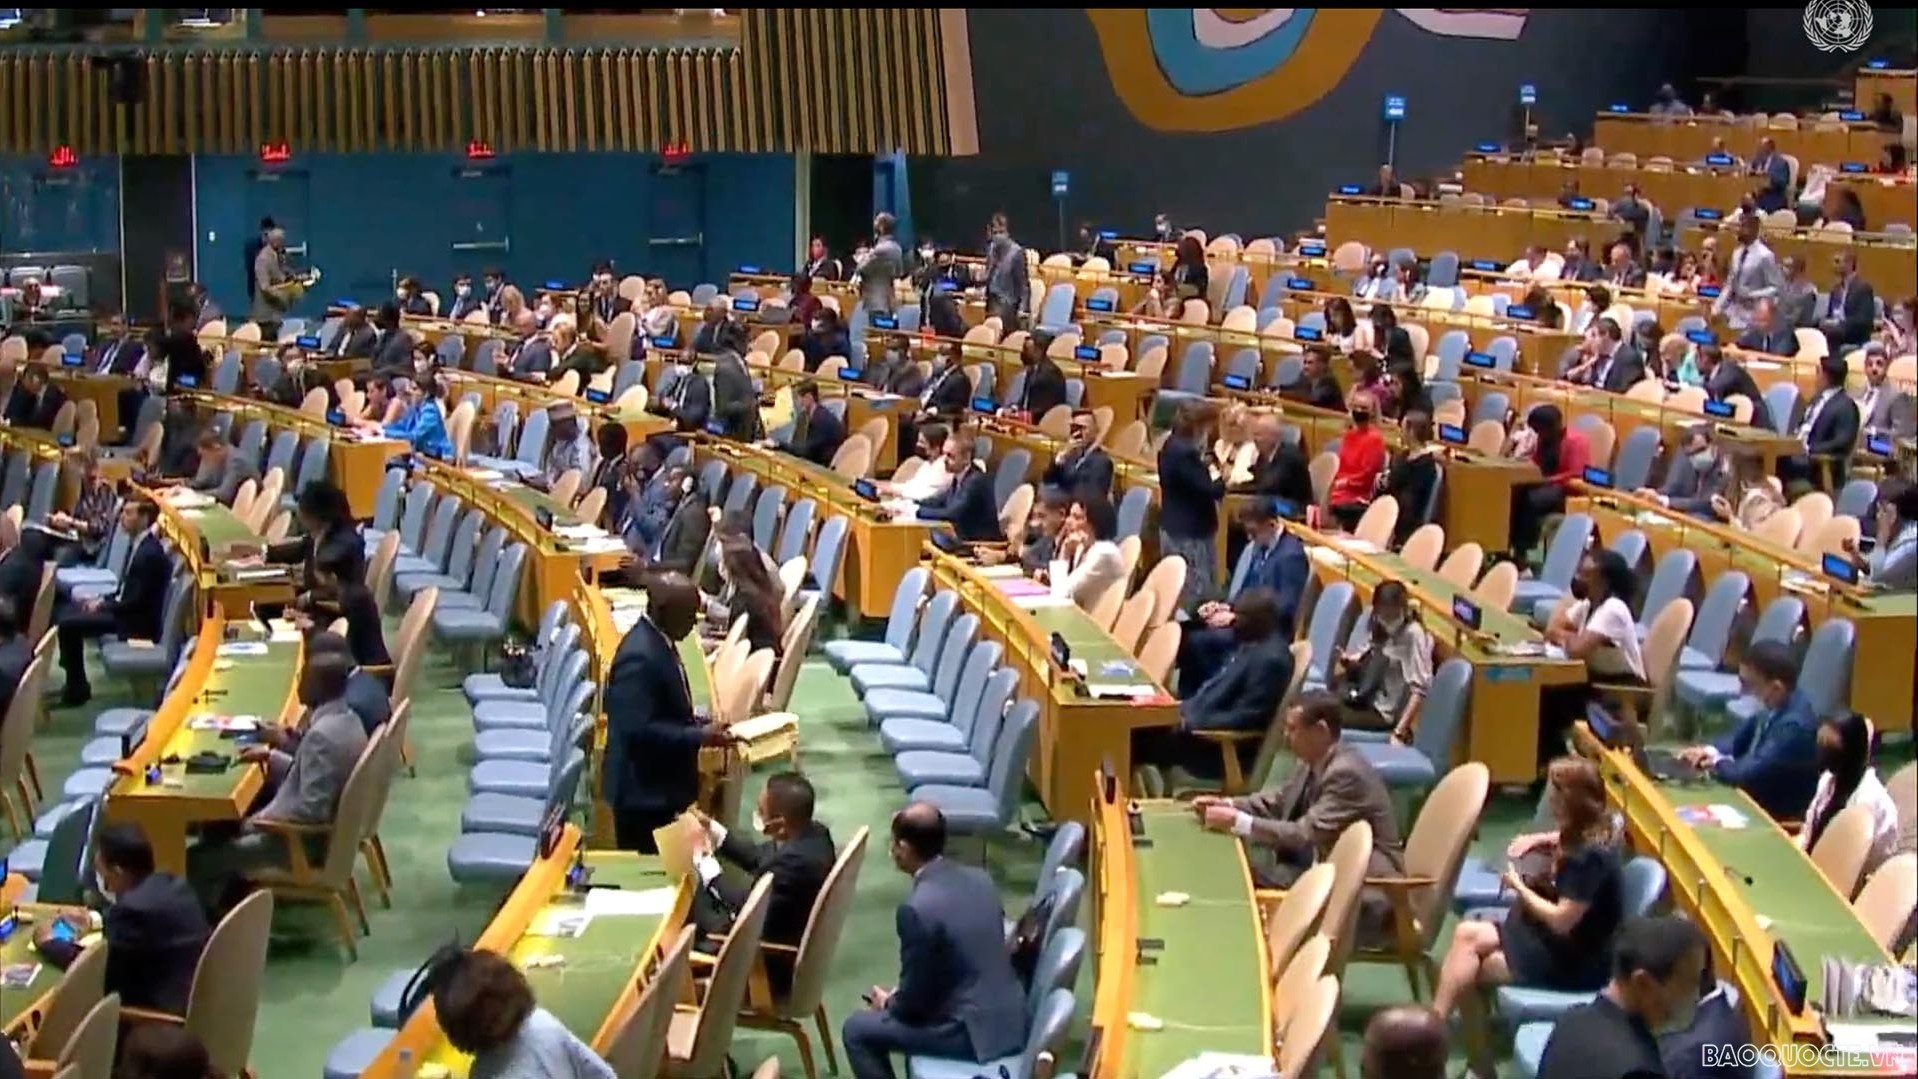 Liên hợp quốc bầu 5 Ủy viên không thường trực Hội đồng Bảo an nhiệm kỳ 2023-2024